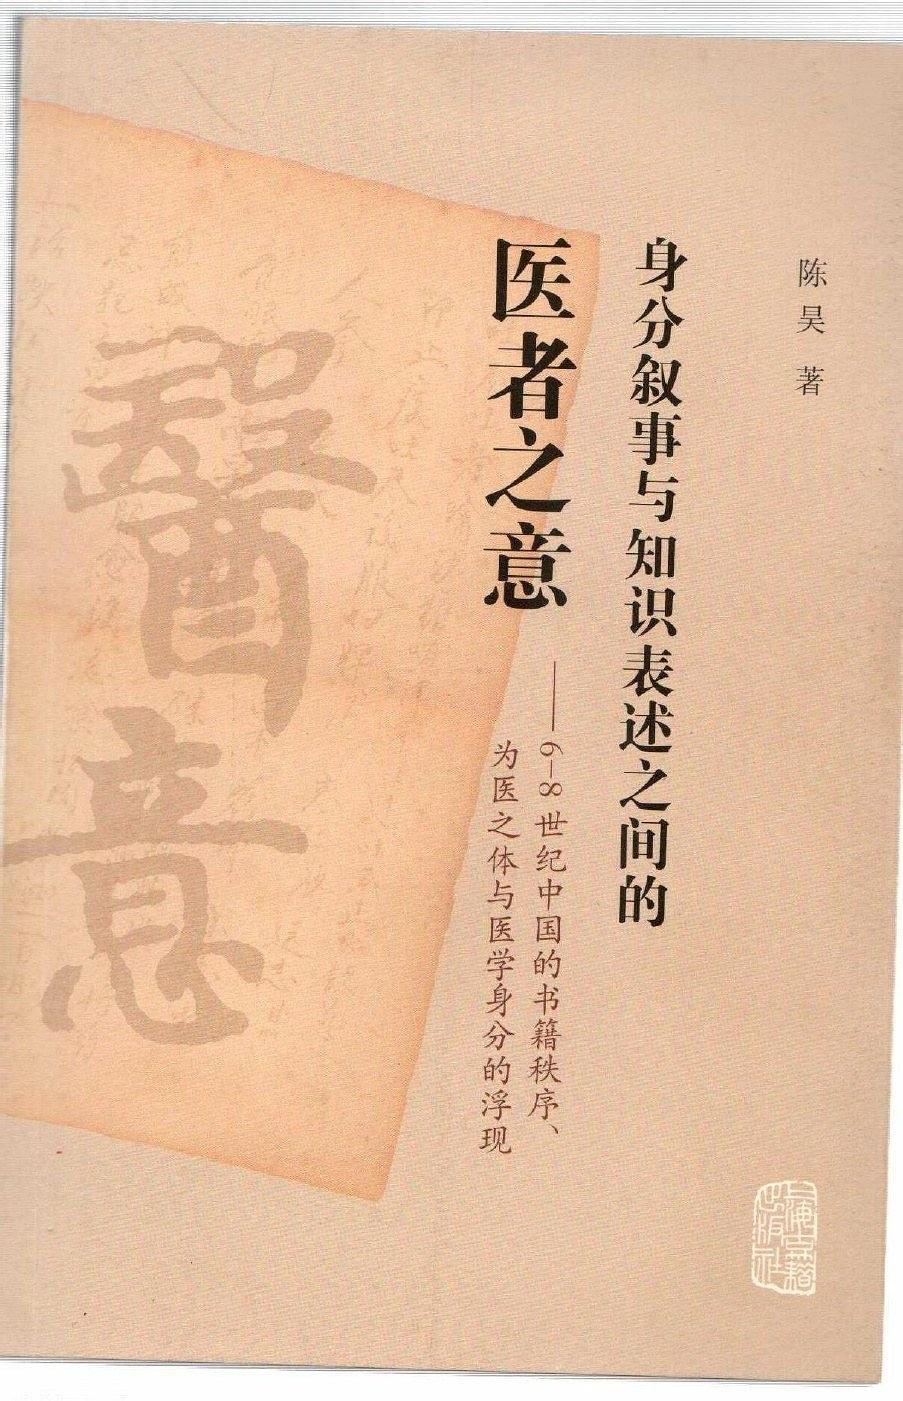 身分叙事与知识表述之间的医者之意：6-8世纪中国的书籍秩序、为医之体与医学身分的浮现